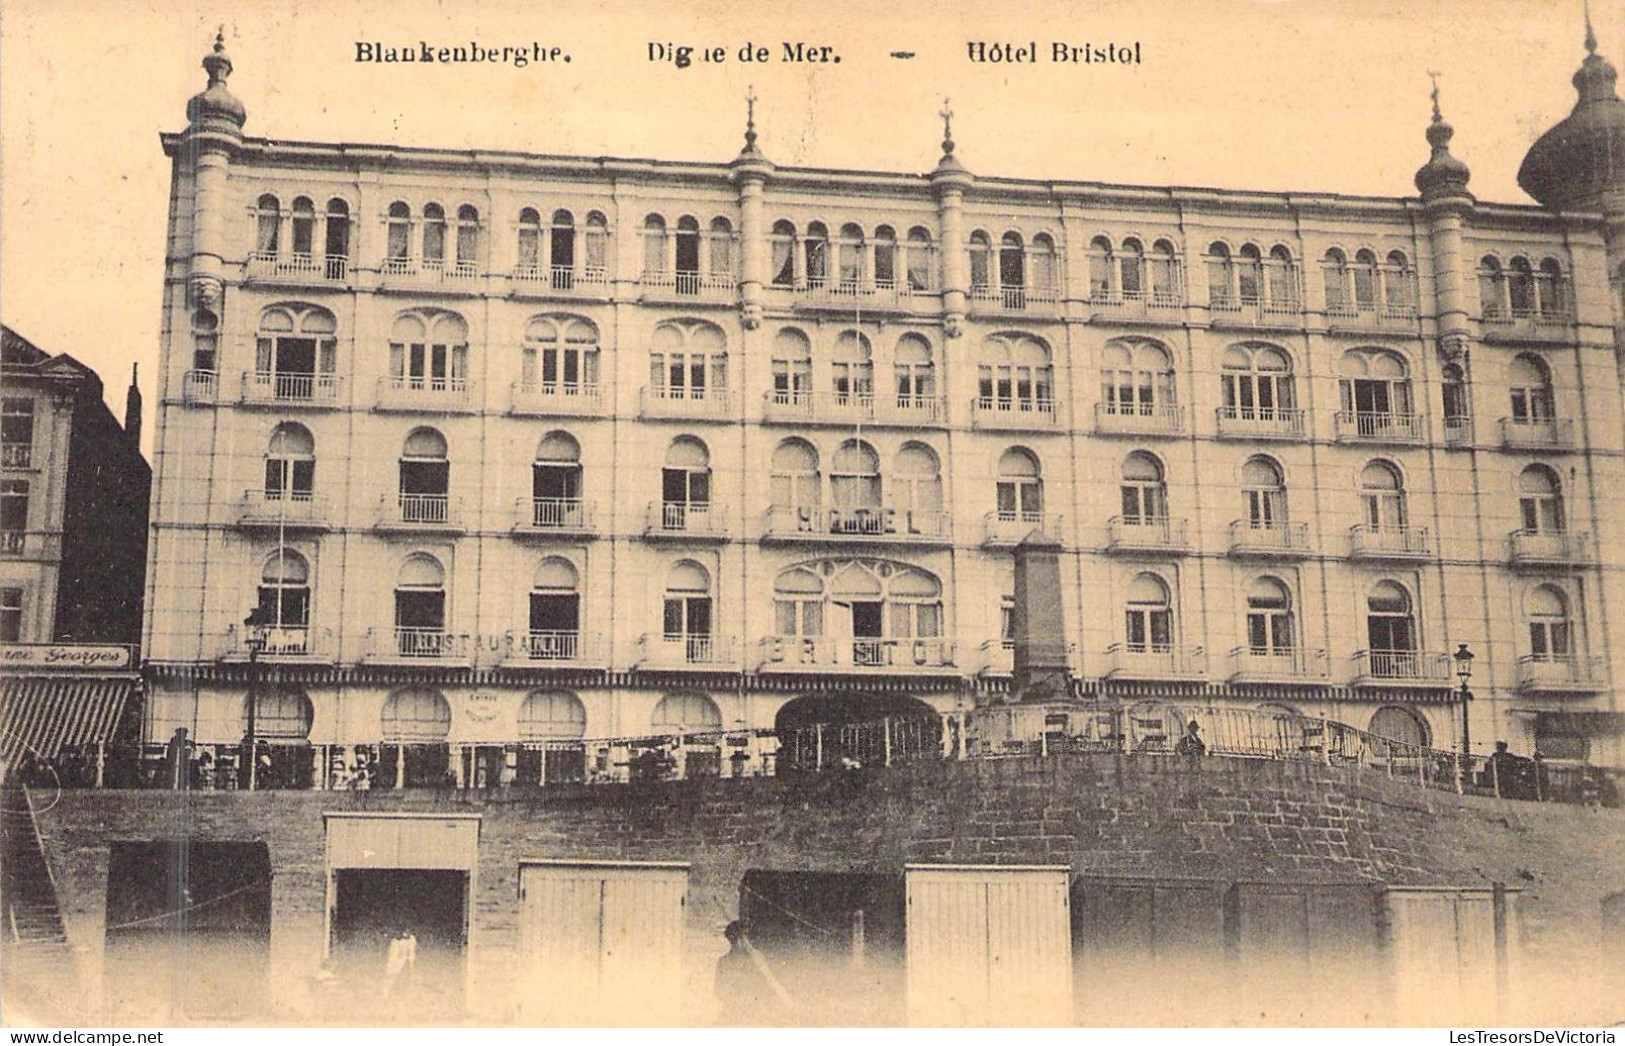 BELGIQUE - BLANFENBERGHE - Dig De La Mer - Hôtel Bristol - Carte Postale Ancienne - Blankenberge